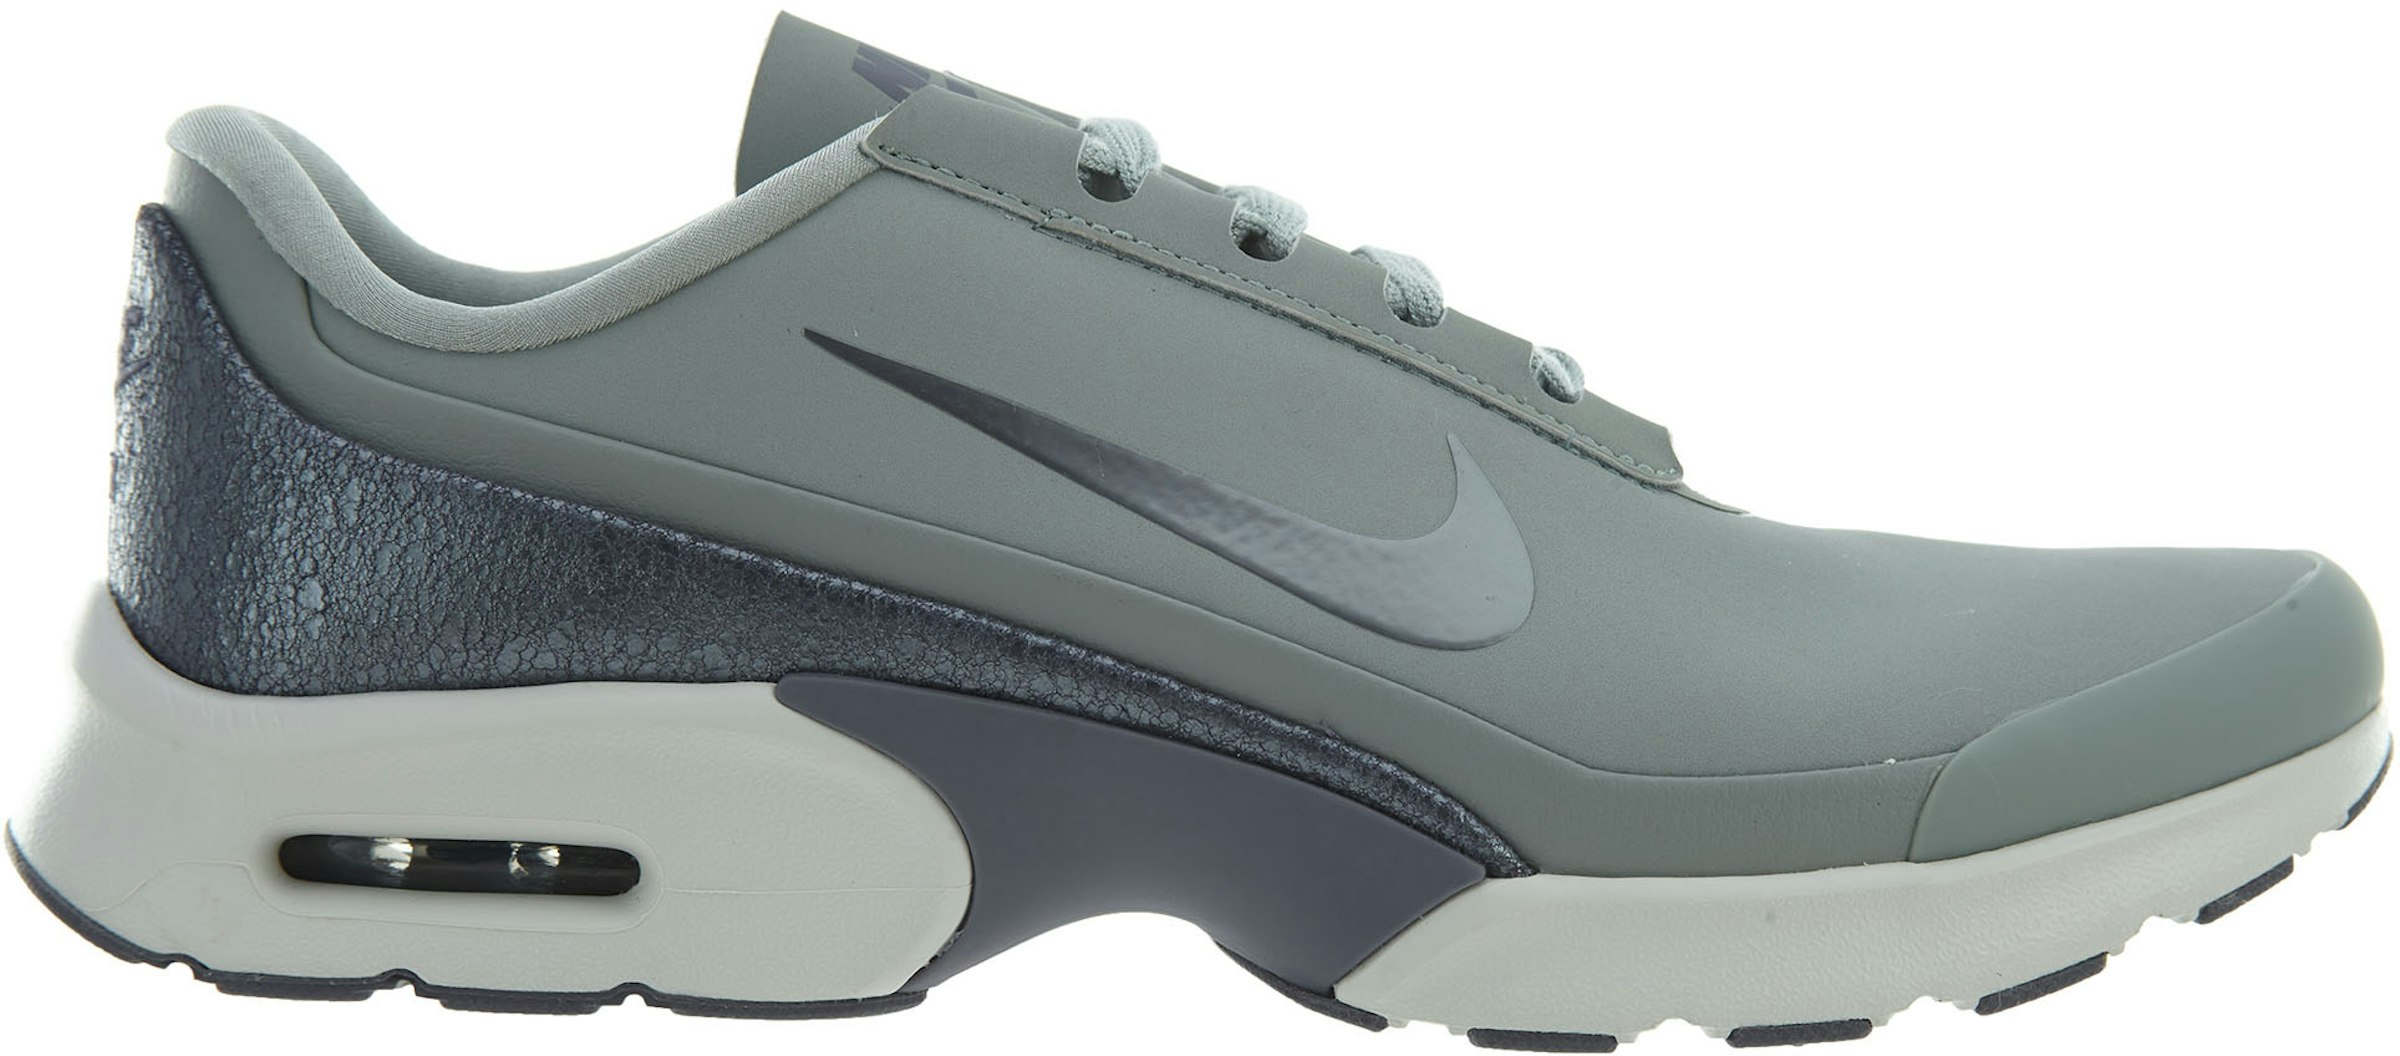 applaus Uiterlijk Fluisteren Nike Air Max Jewell Leather Pumice Metallic Cool Grey (Women's) -  AH6790-002 - US